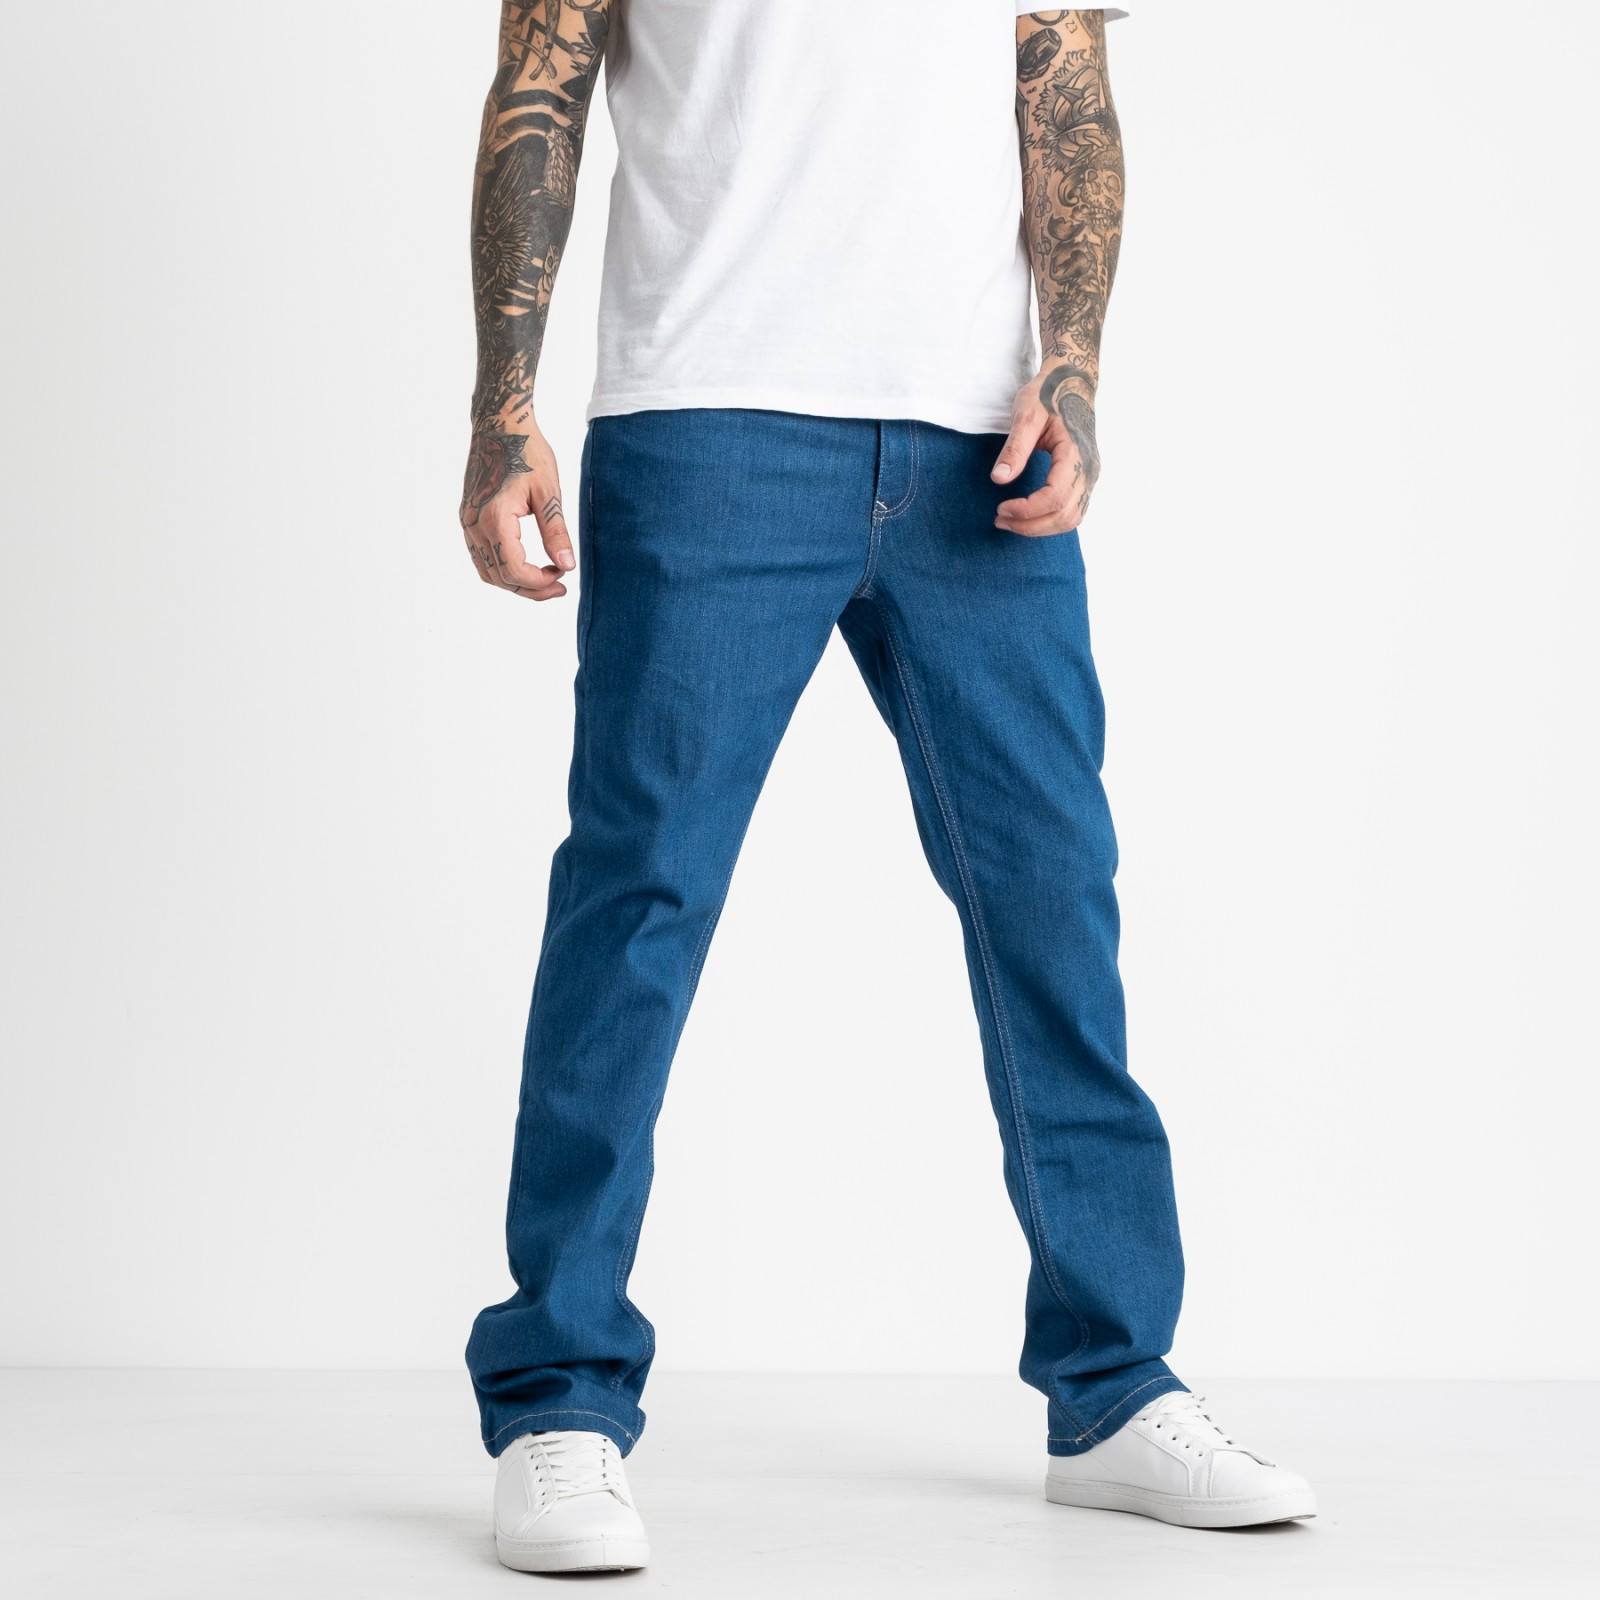 1933 Nescoly джинсы мужские синие стрейчевые (8 ед. размеры: 30.32.34/2.36/2.38.40)